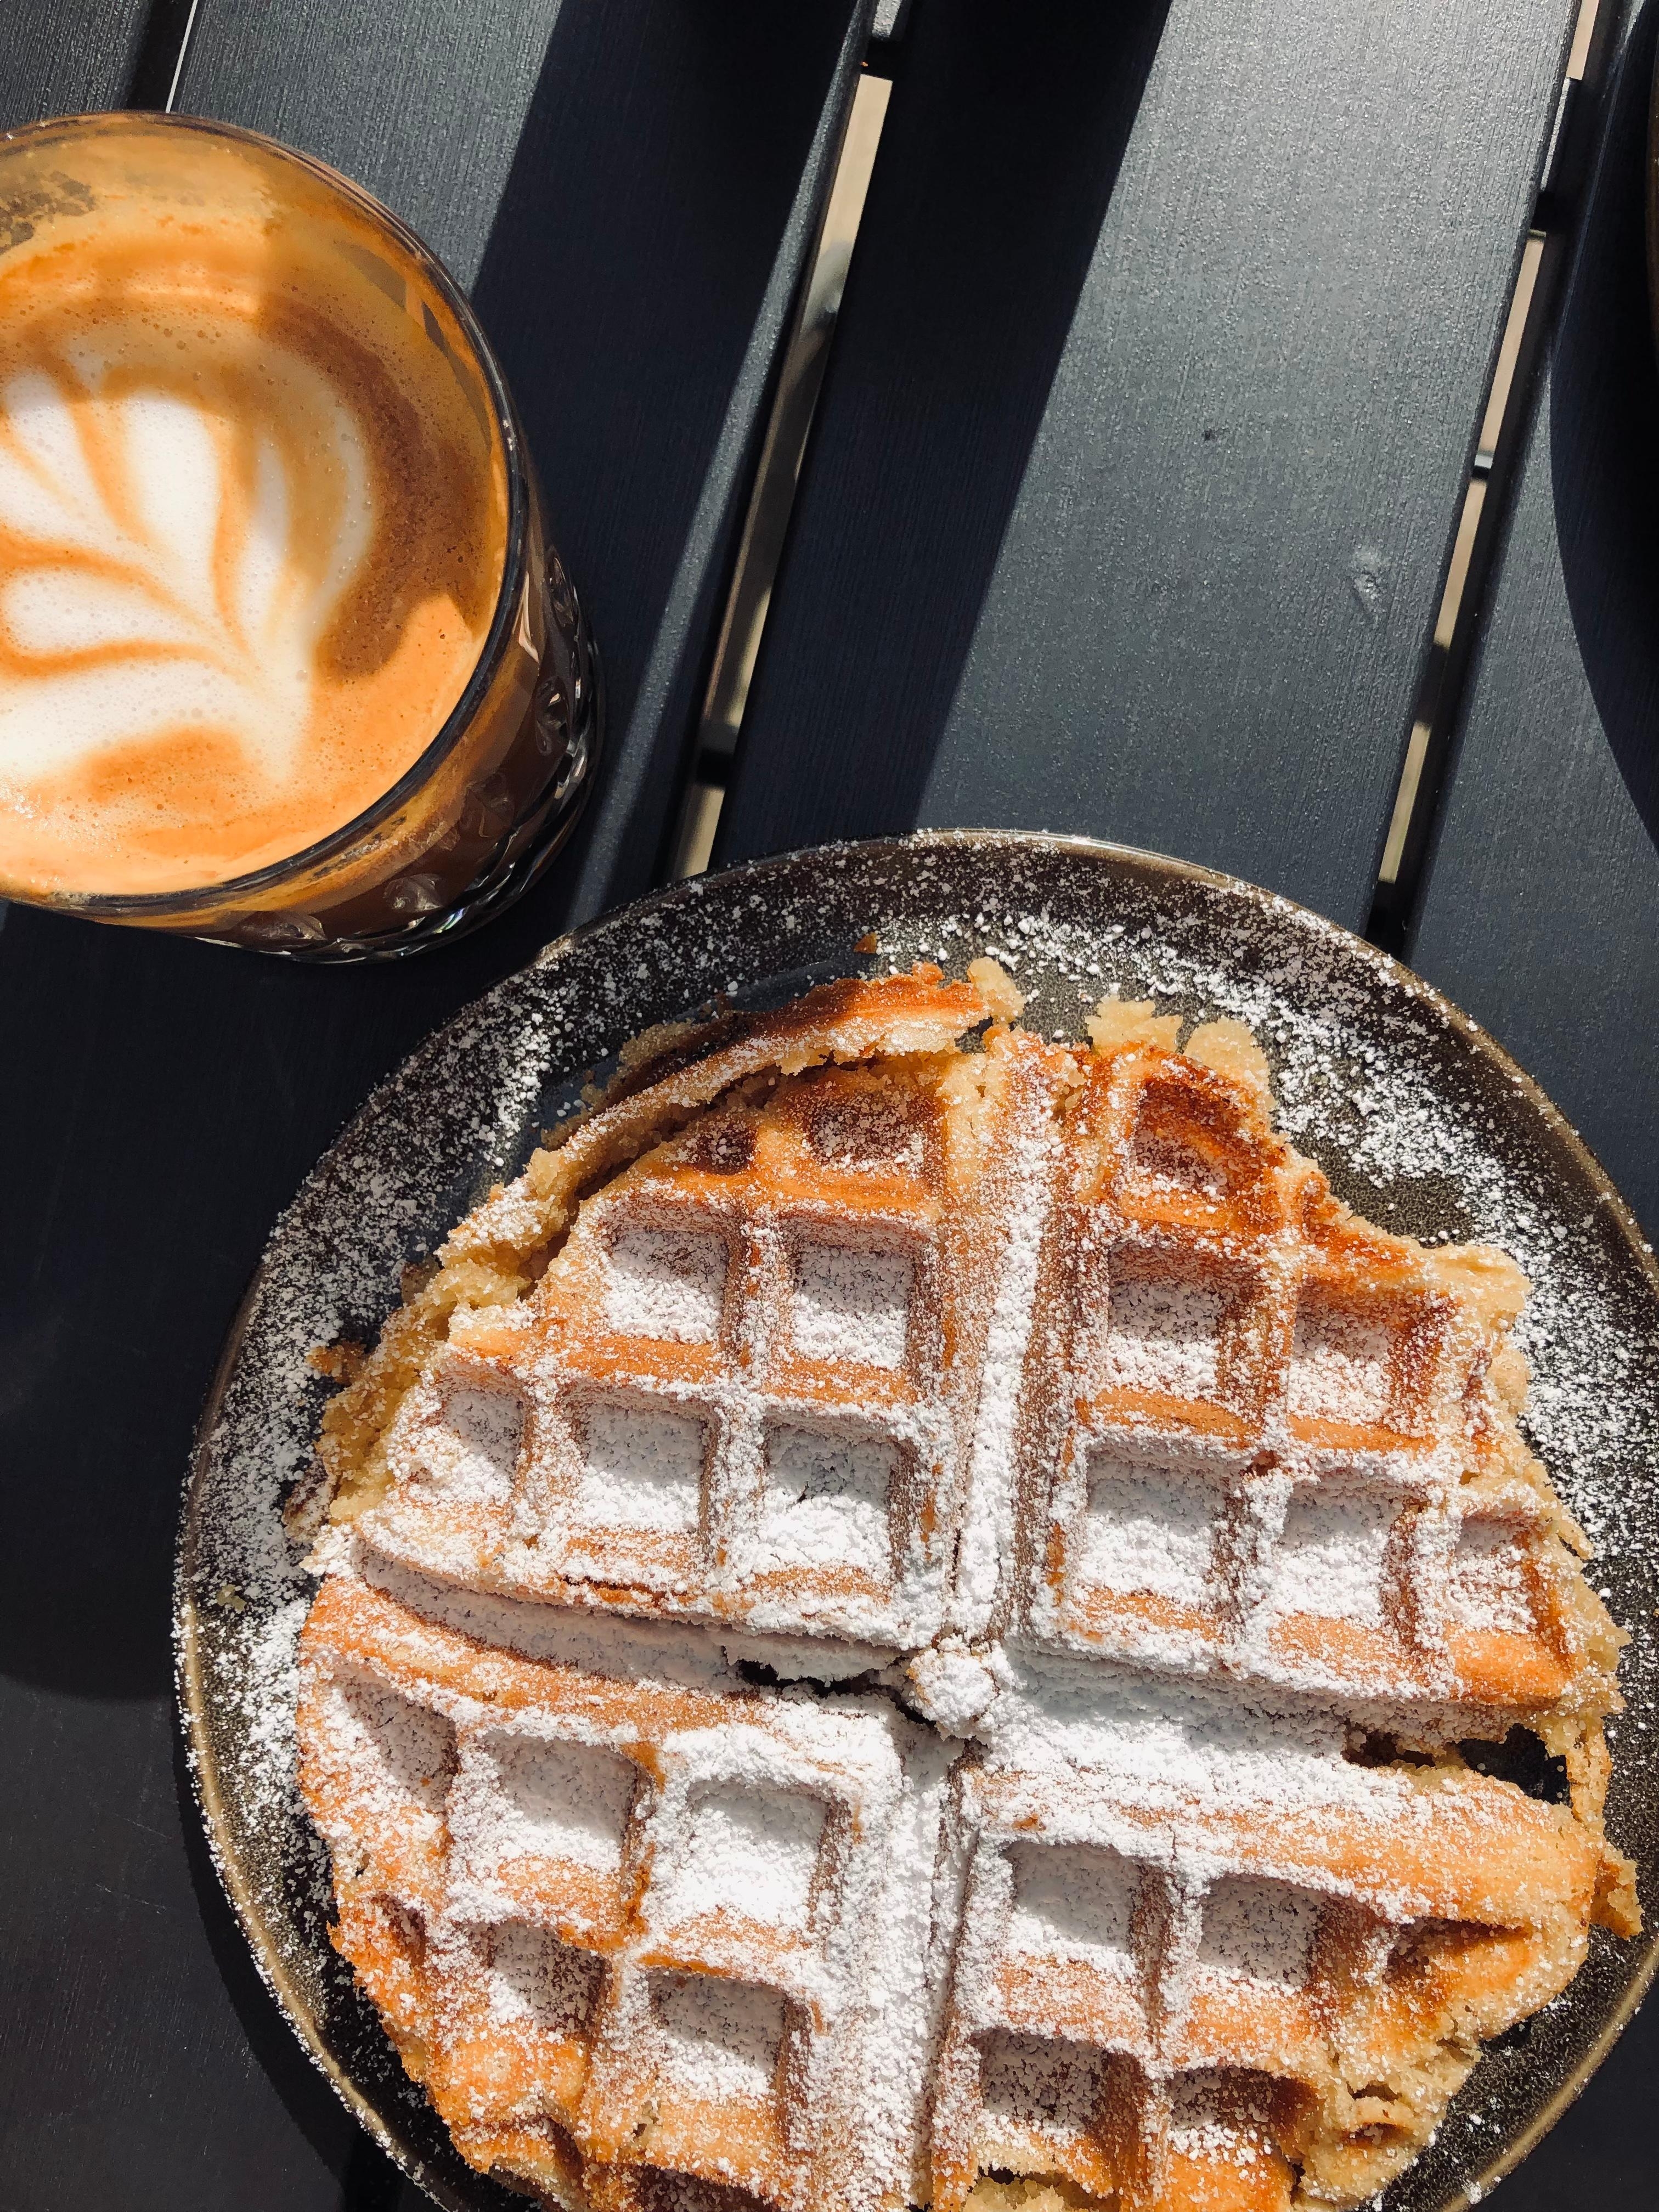 Weekend plans ☀️☕️
#sweetbreakfast #coffeeinthesun #springvibes